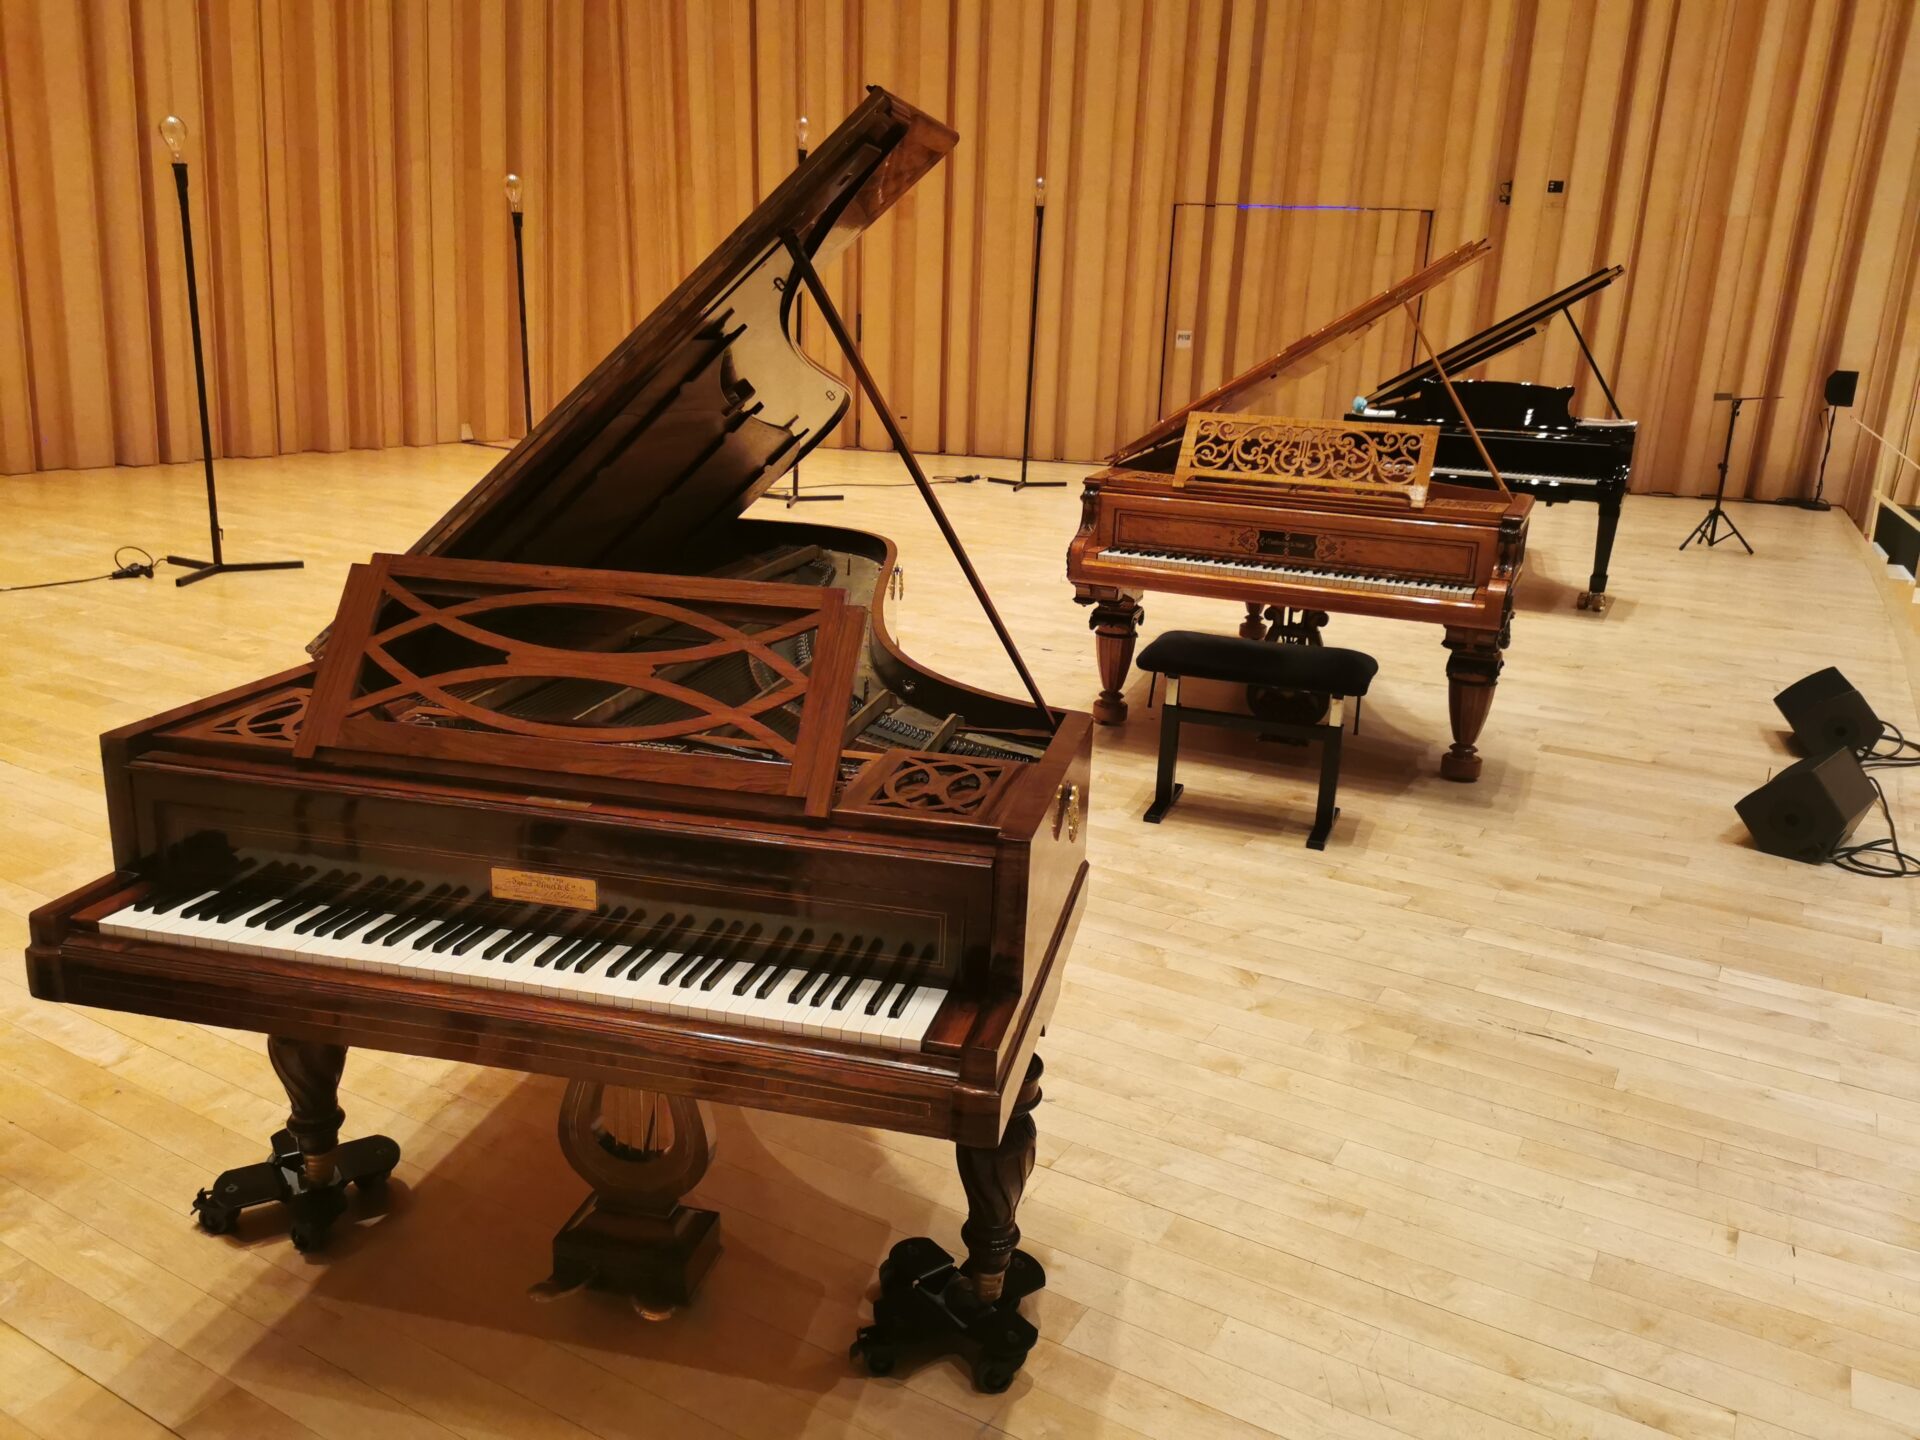 trois pianos à queue alignés sur scène,Pleyel, Chickering, Steinway&Sons